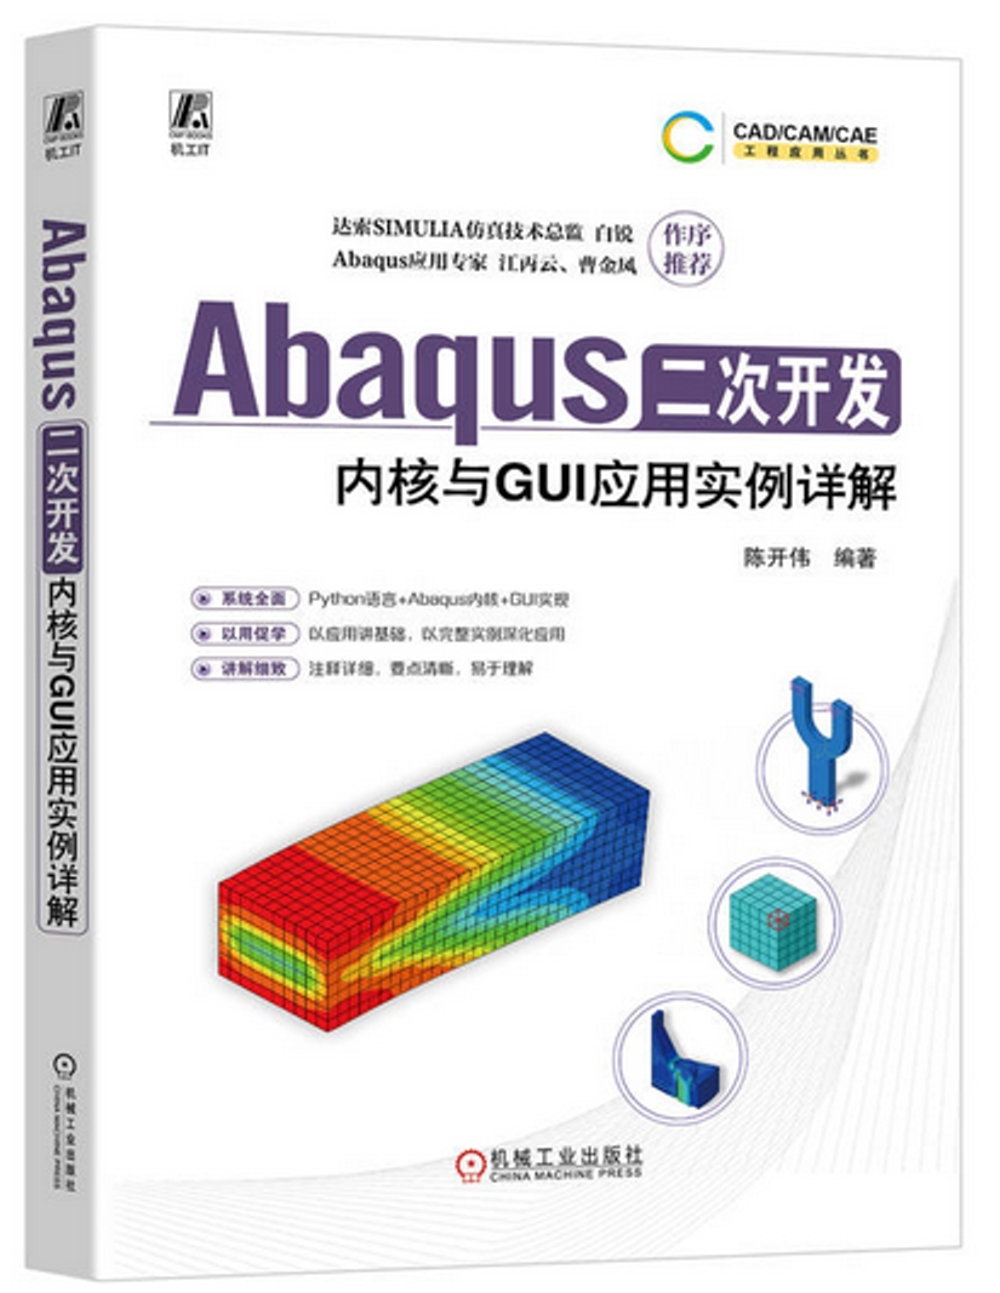 Abaqus二次開發：內核與GUI應用實例詳解